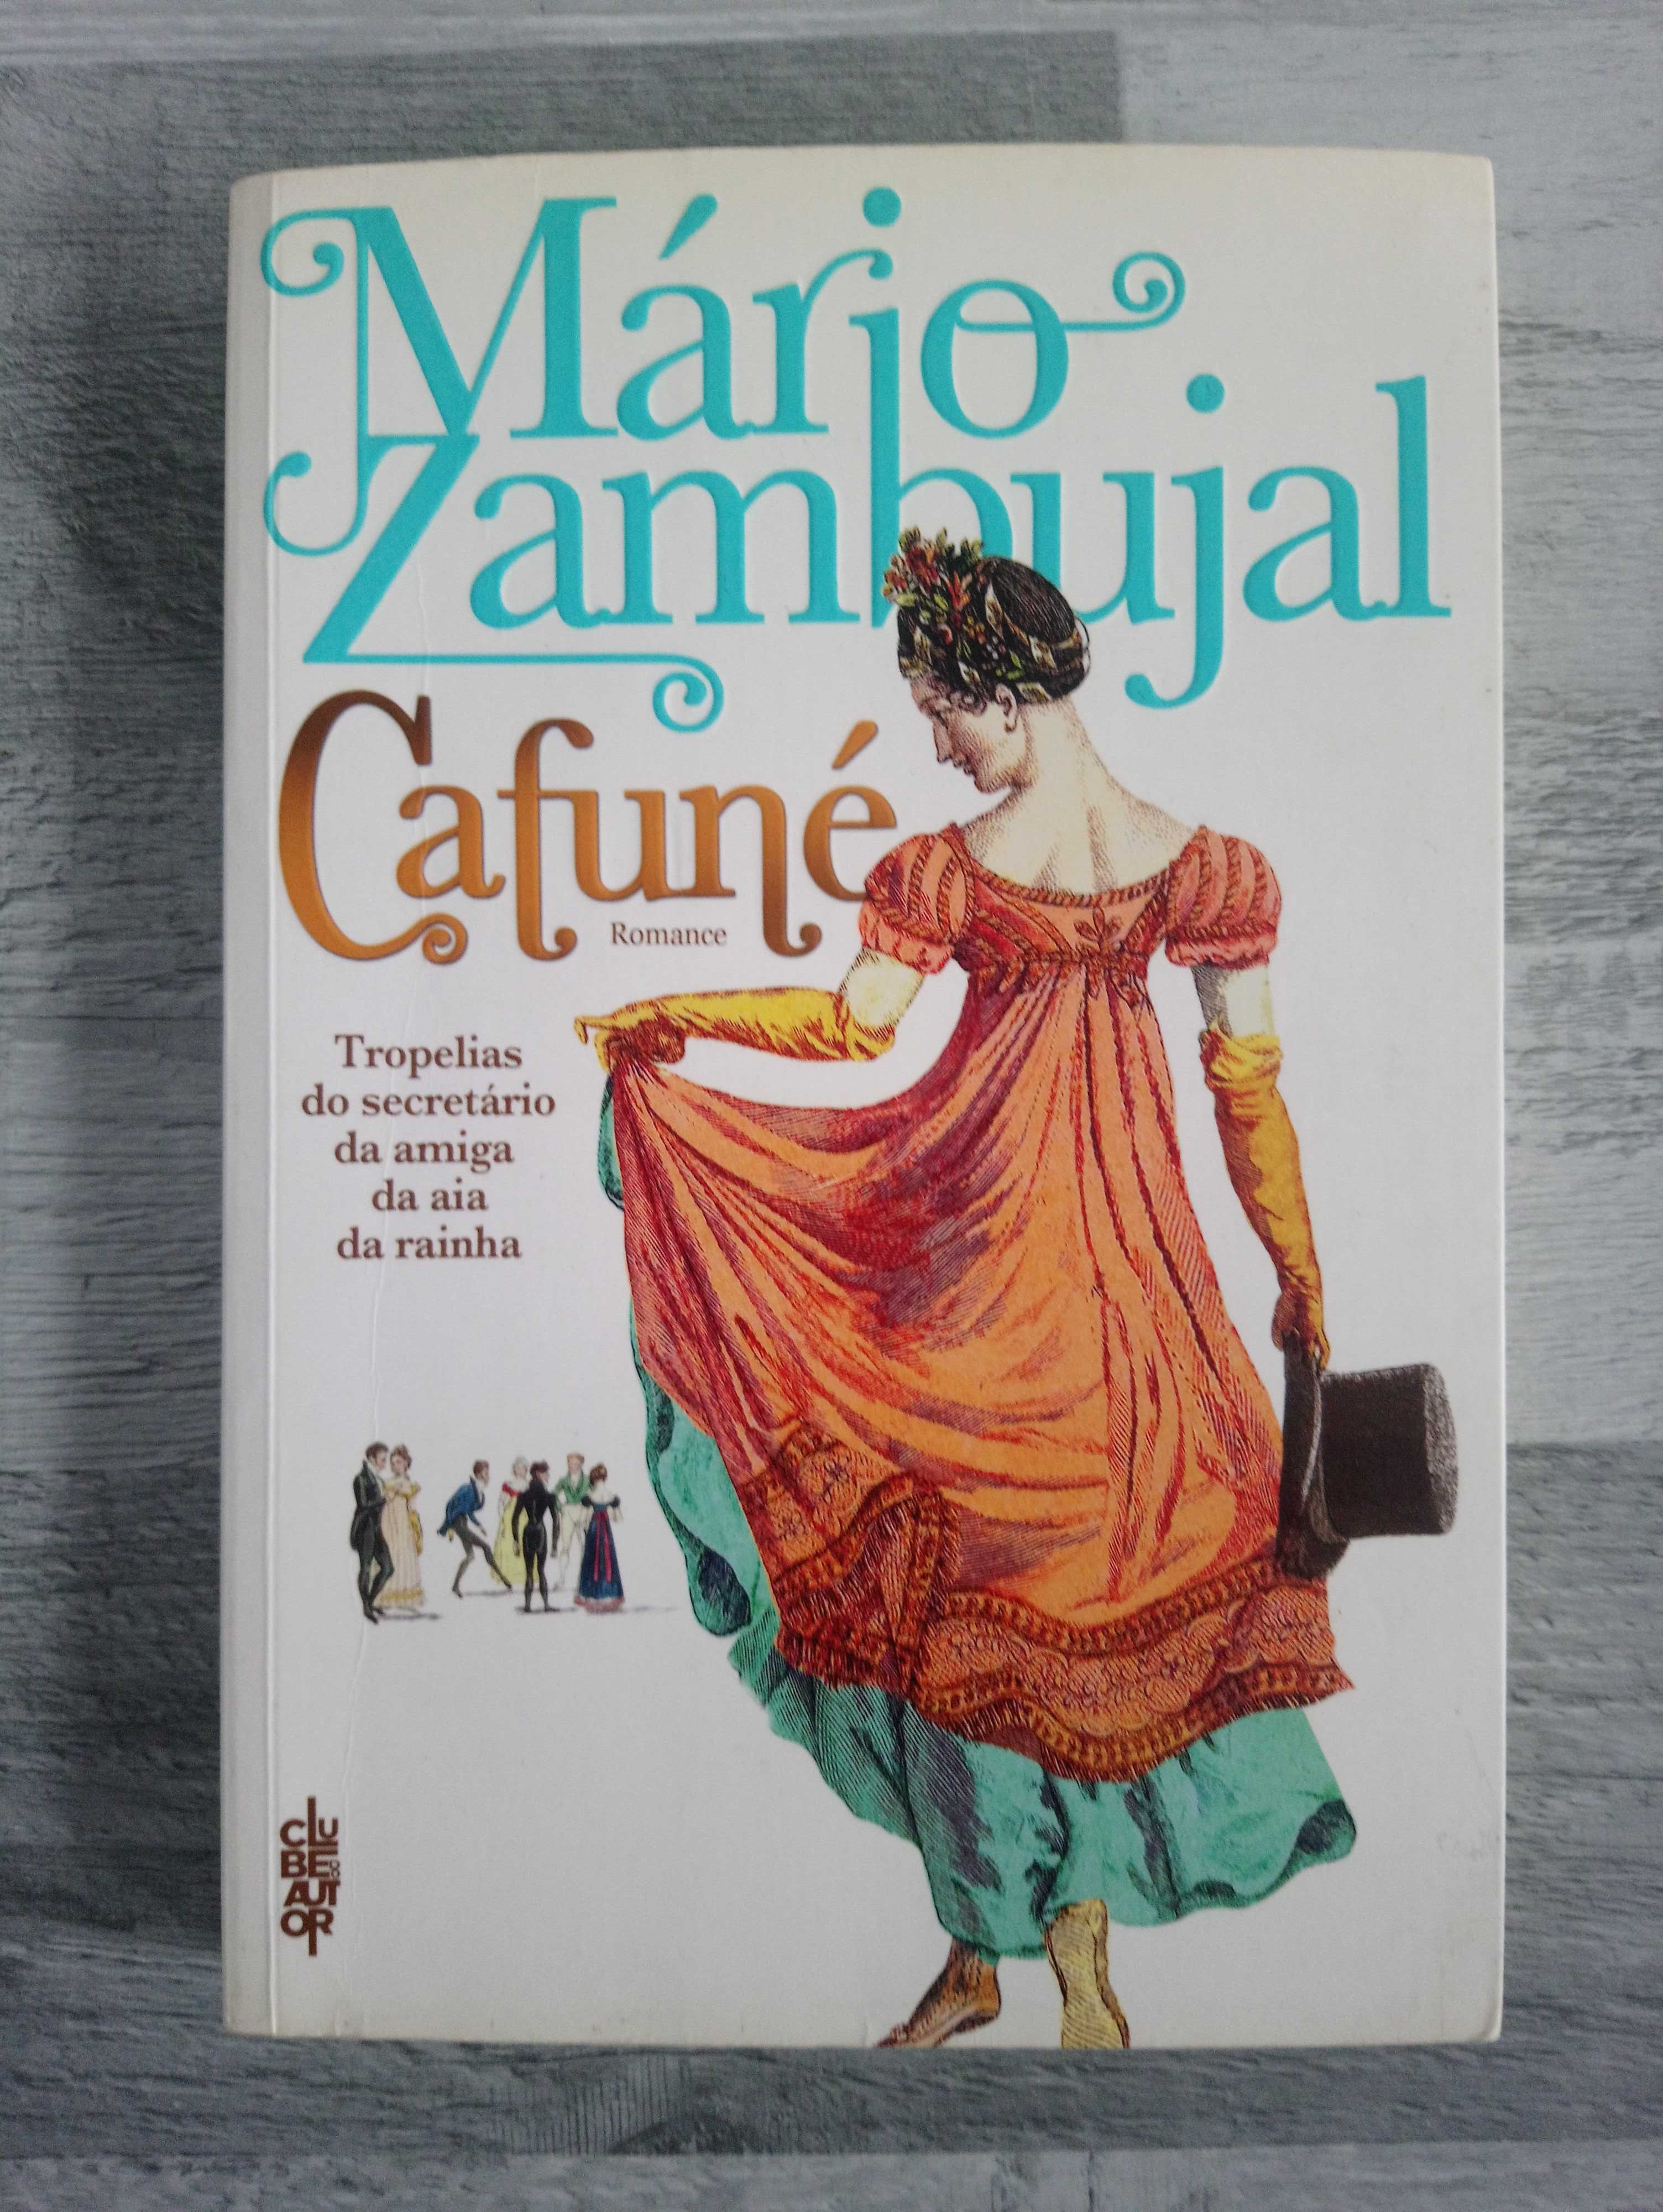 Livro "Cafuné" de Mário Zambujal (portes incluídos)